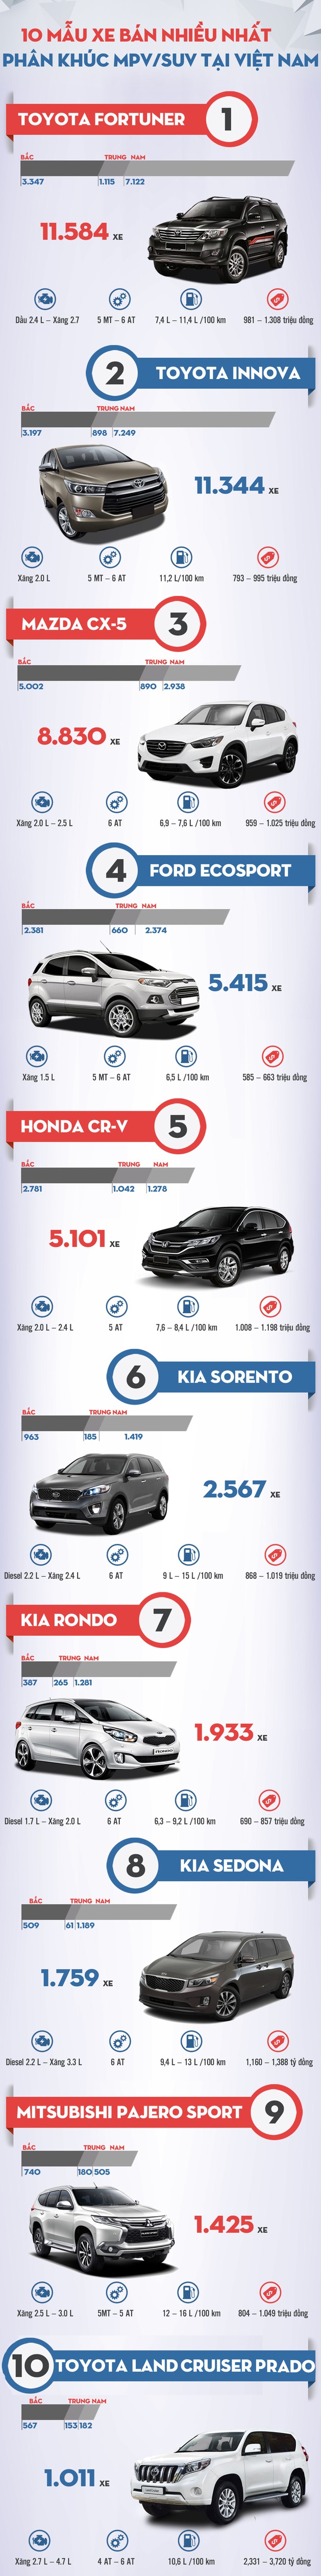 Danh sách những mẫu SUV/MPV bán chạy nhất Việt Nam năm 2016. Đồ họa: Dantri